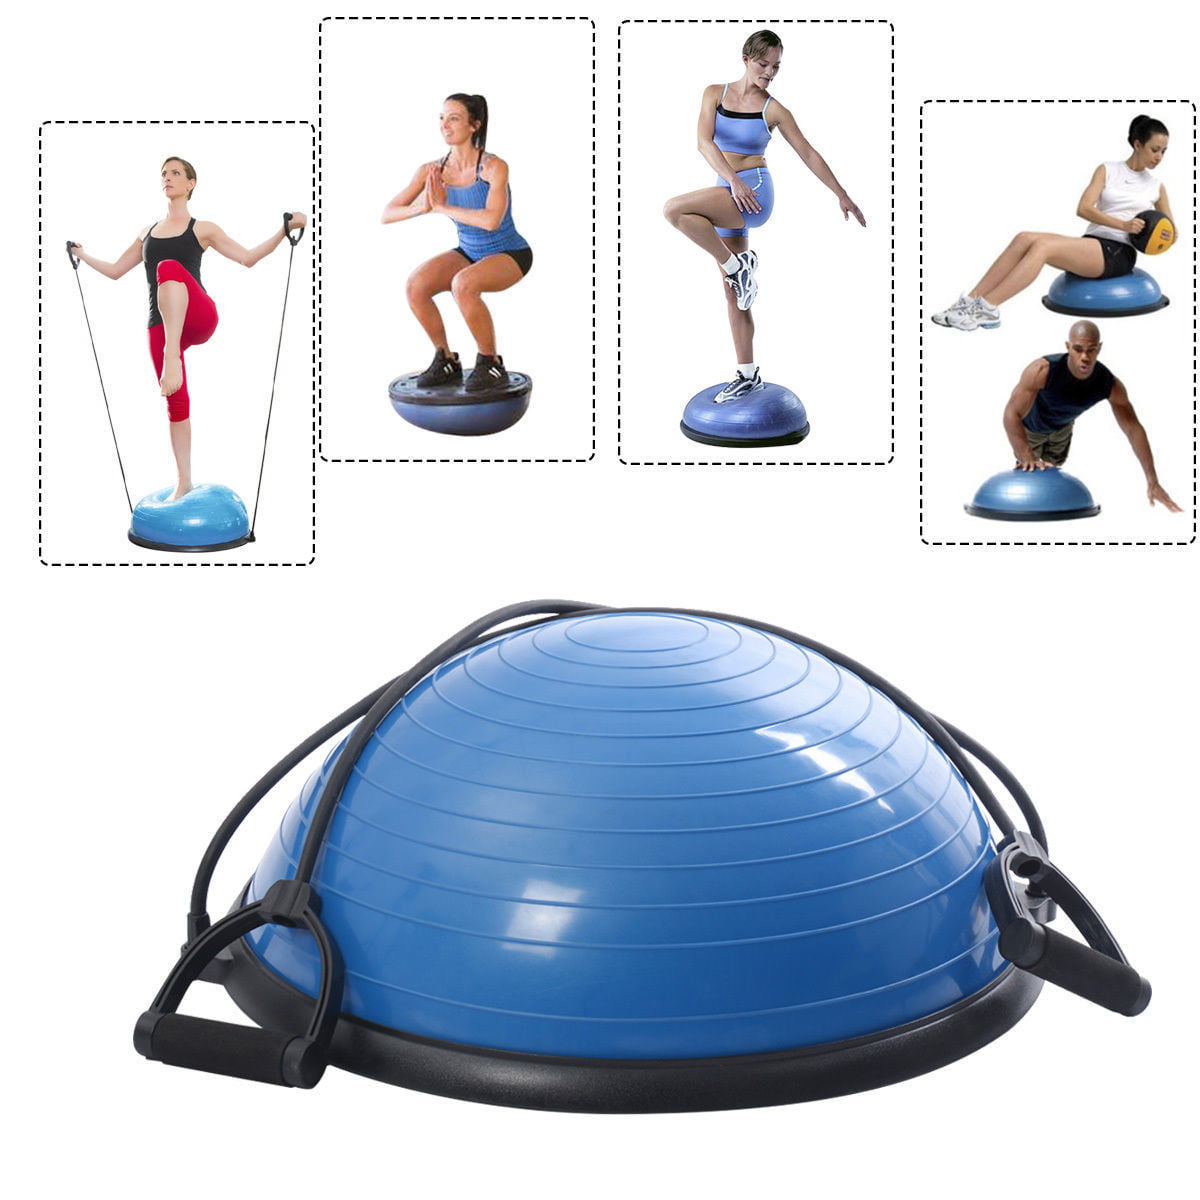 Ktaxon Fitness Blue Yoga Stability 